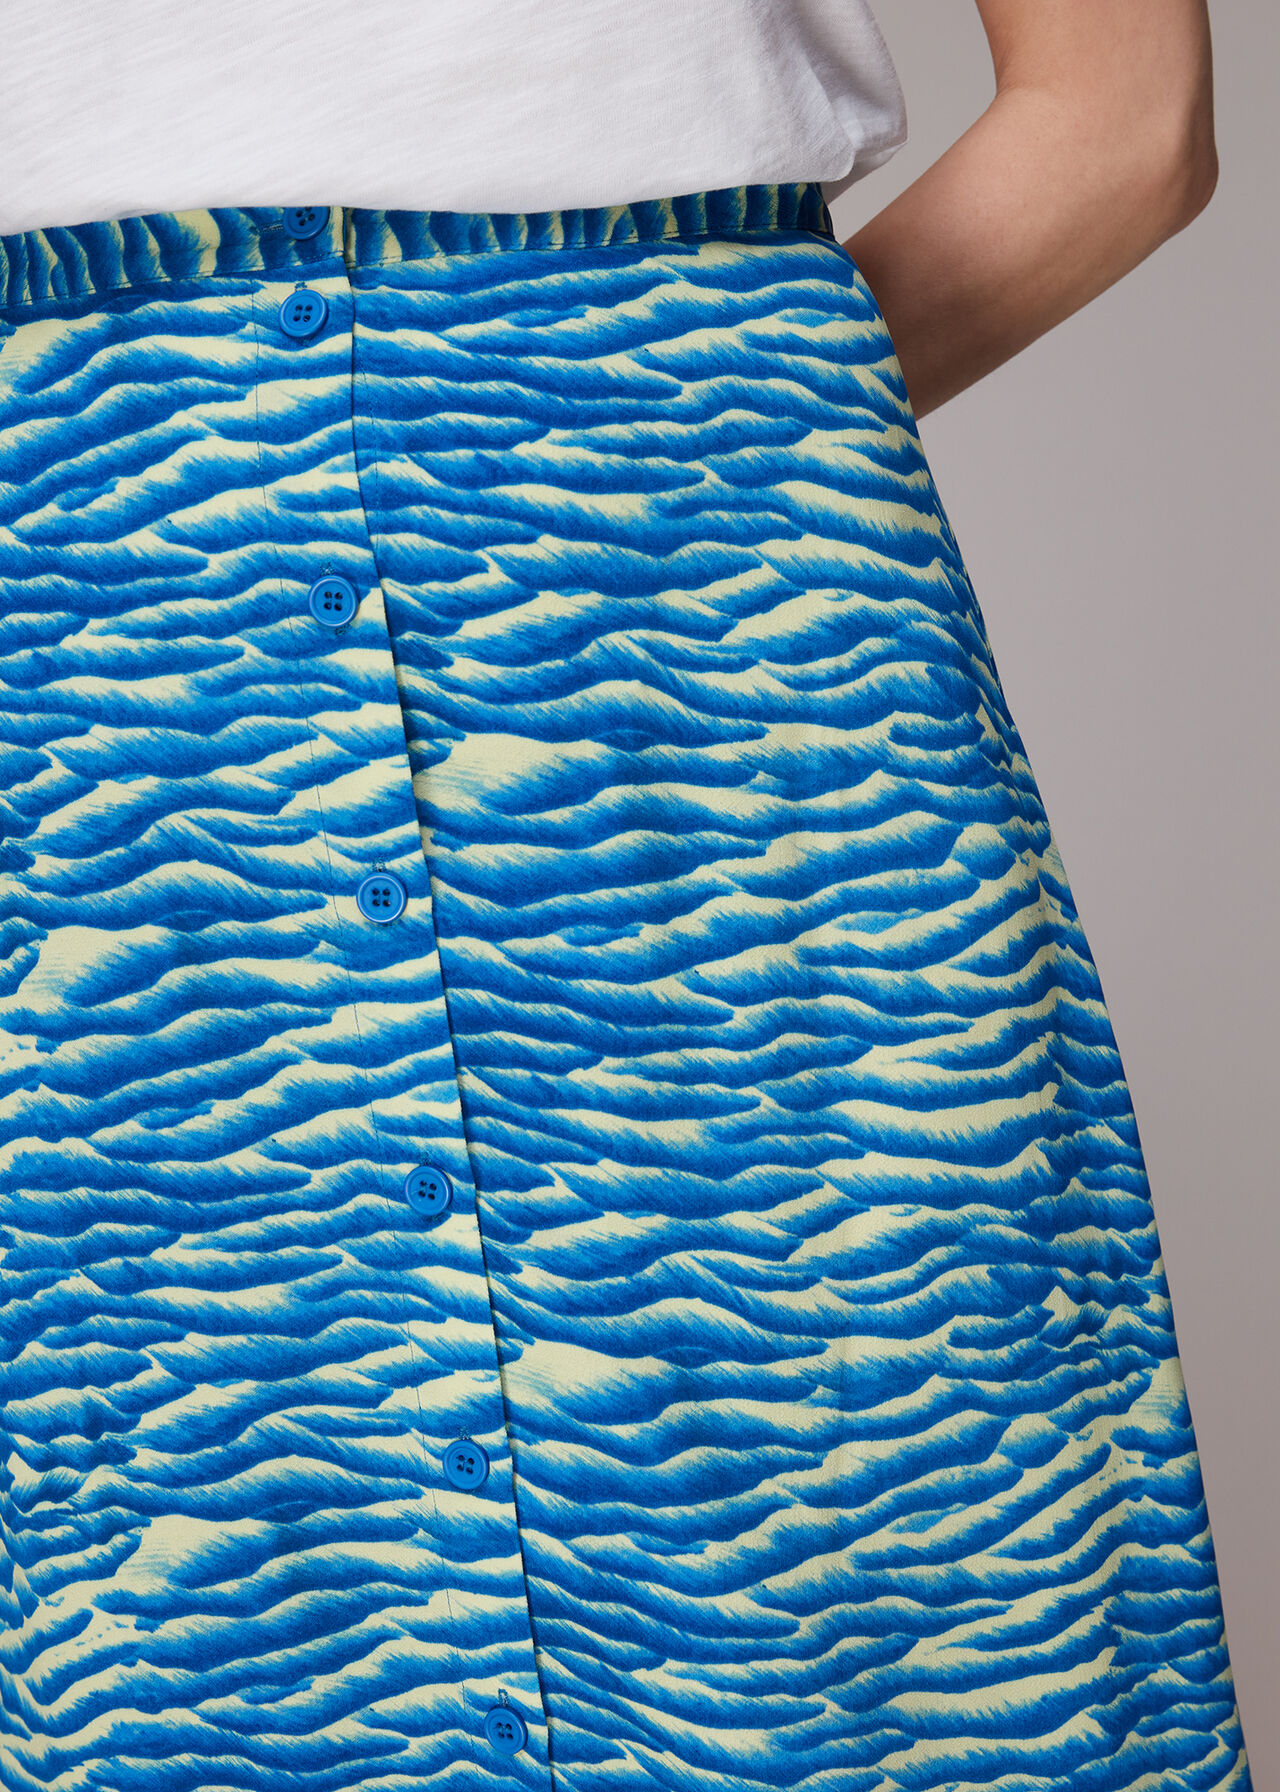 Seafoam Button Front Skirt